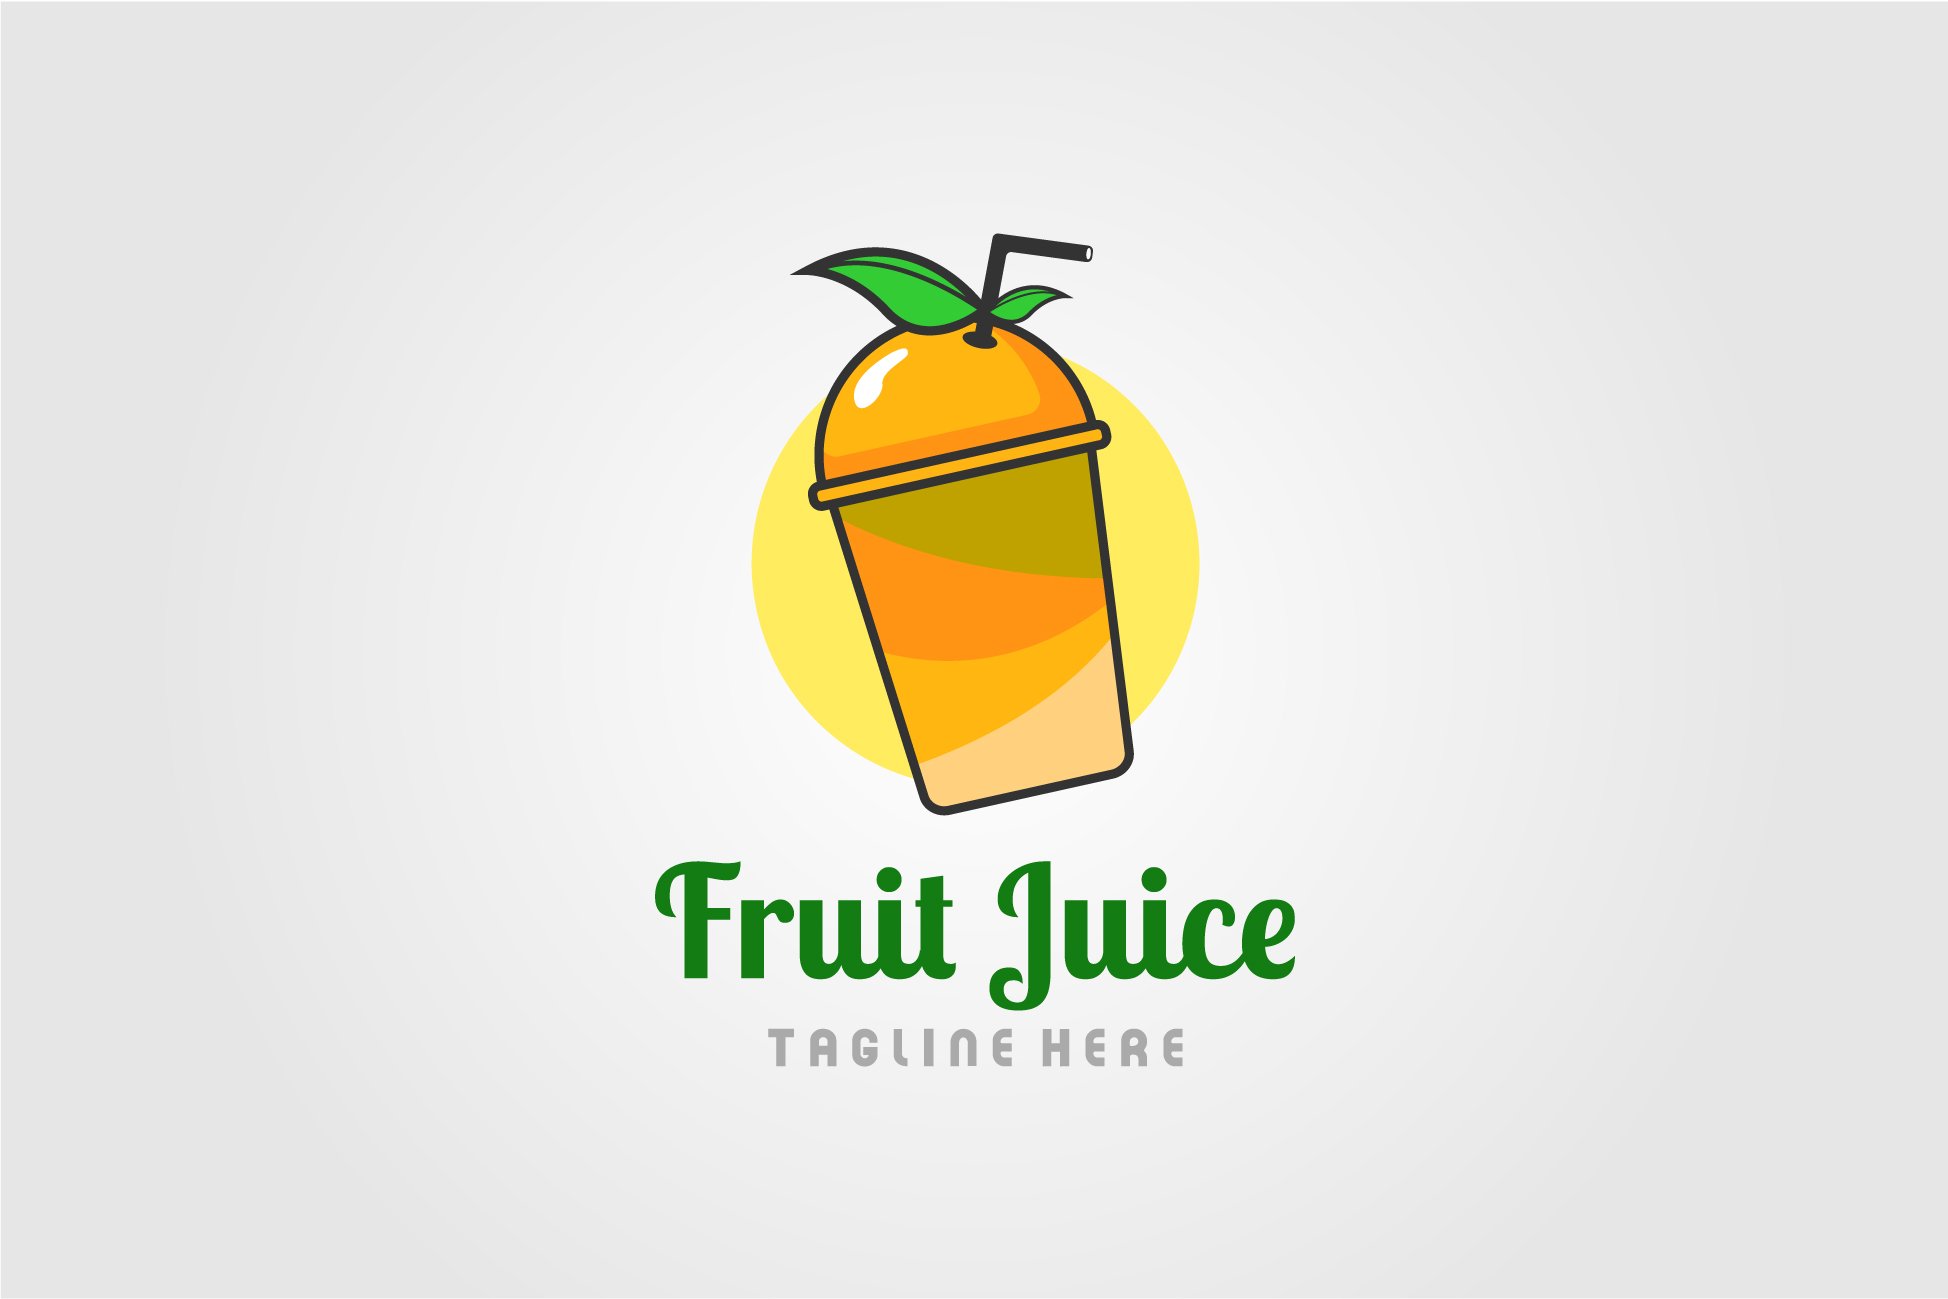 orange juice fruit logo juice cup cover image.